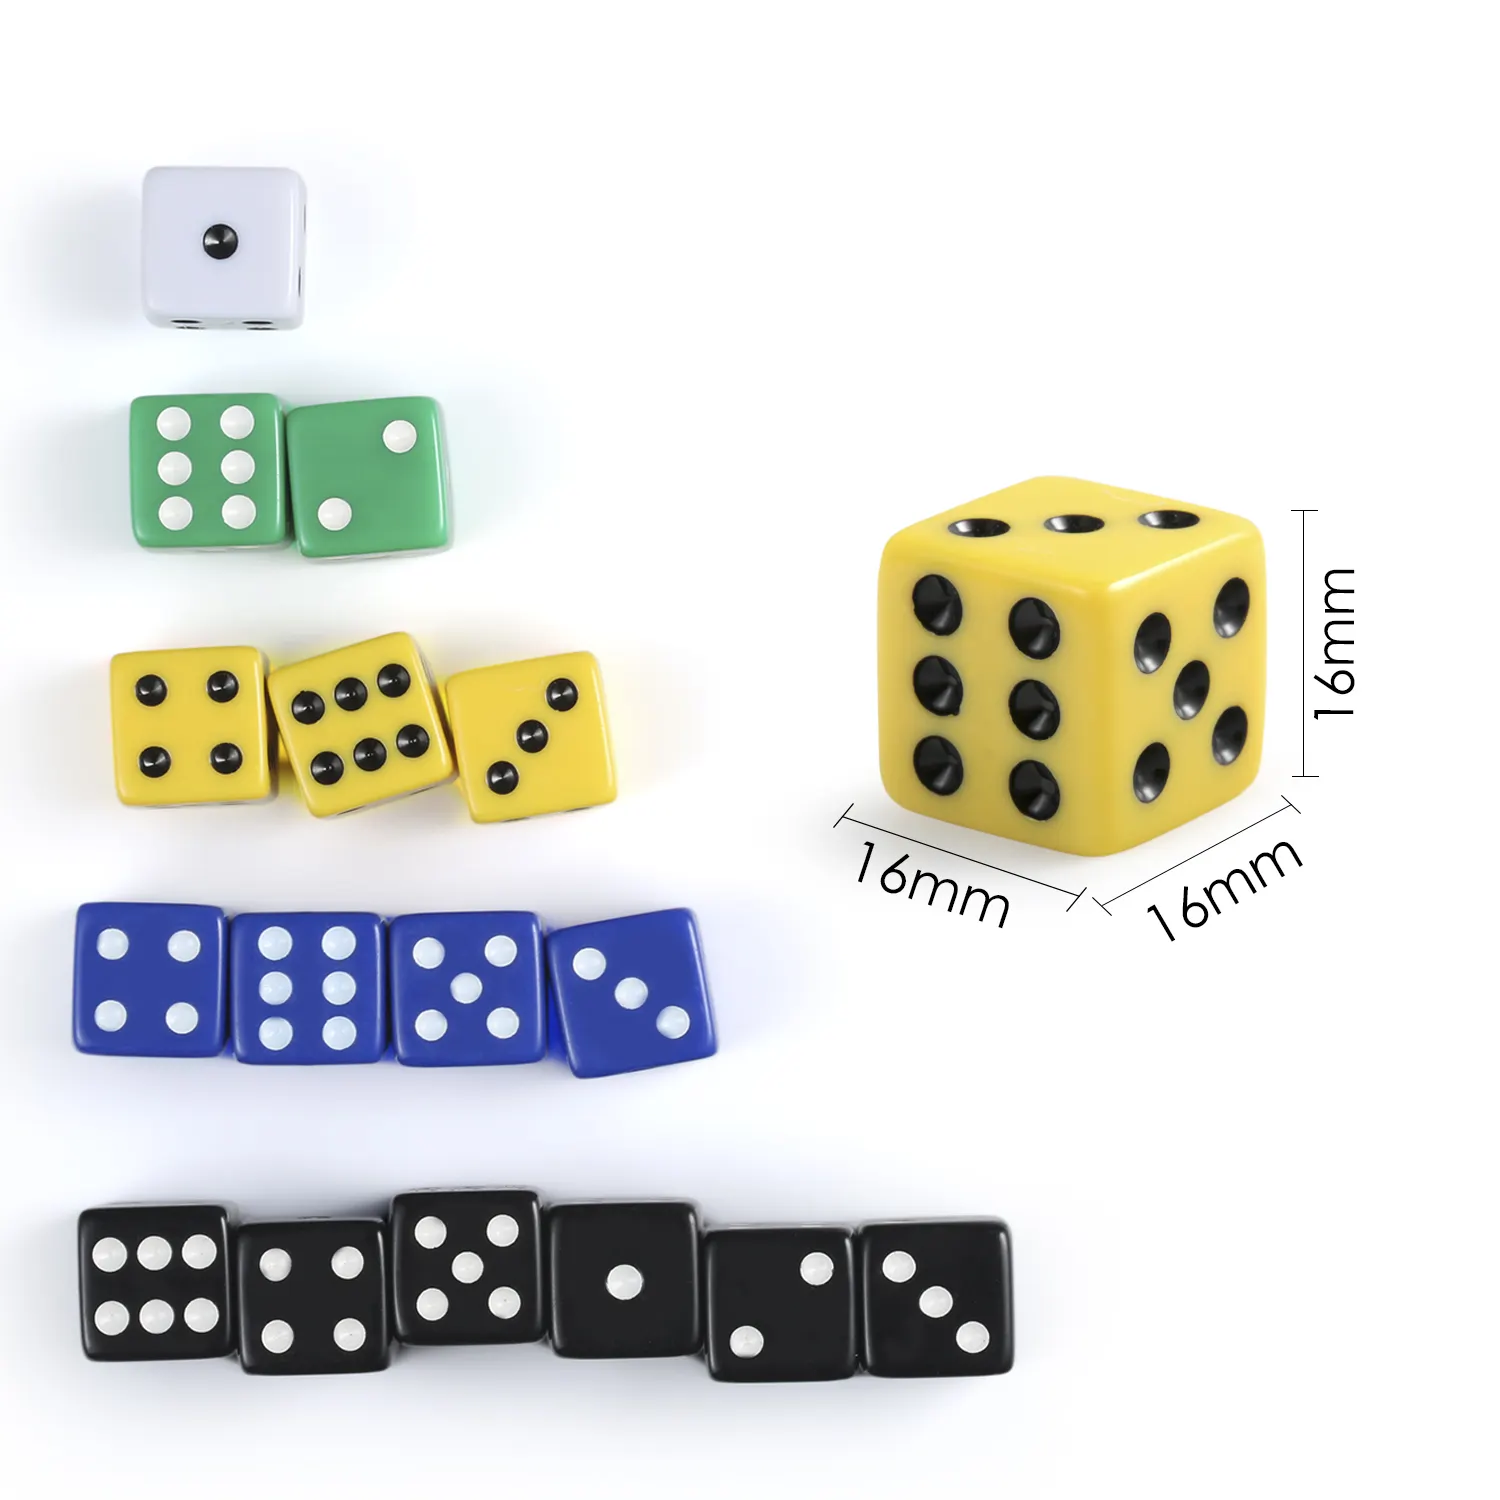 Set di dadi angolari arrotondati a 6 facce da 16mm dadi di gioco D6 di dimensioni Standard in 10 diversi colori solidi custodia per giocare a dadi